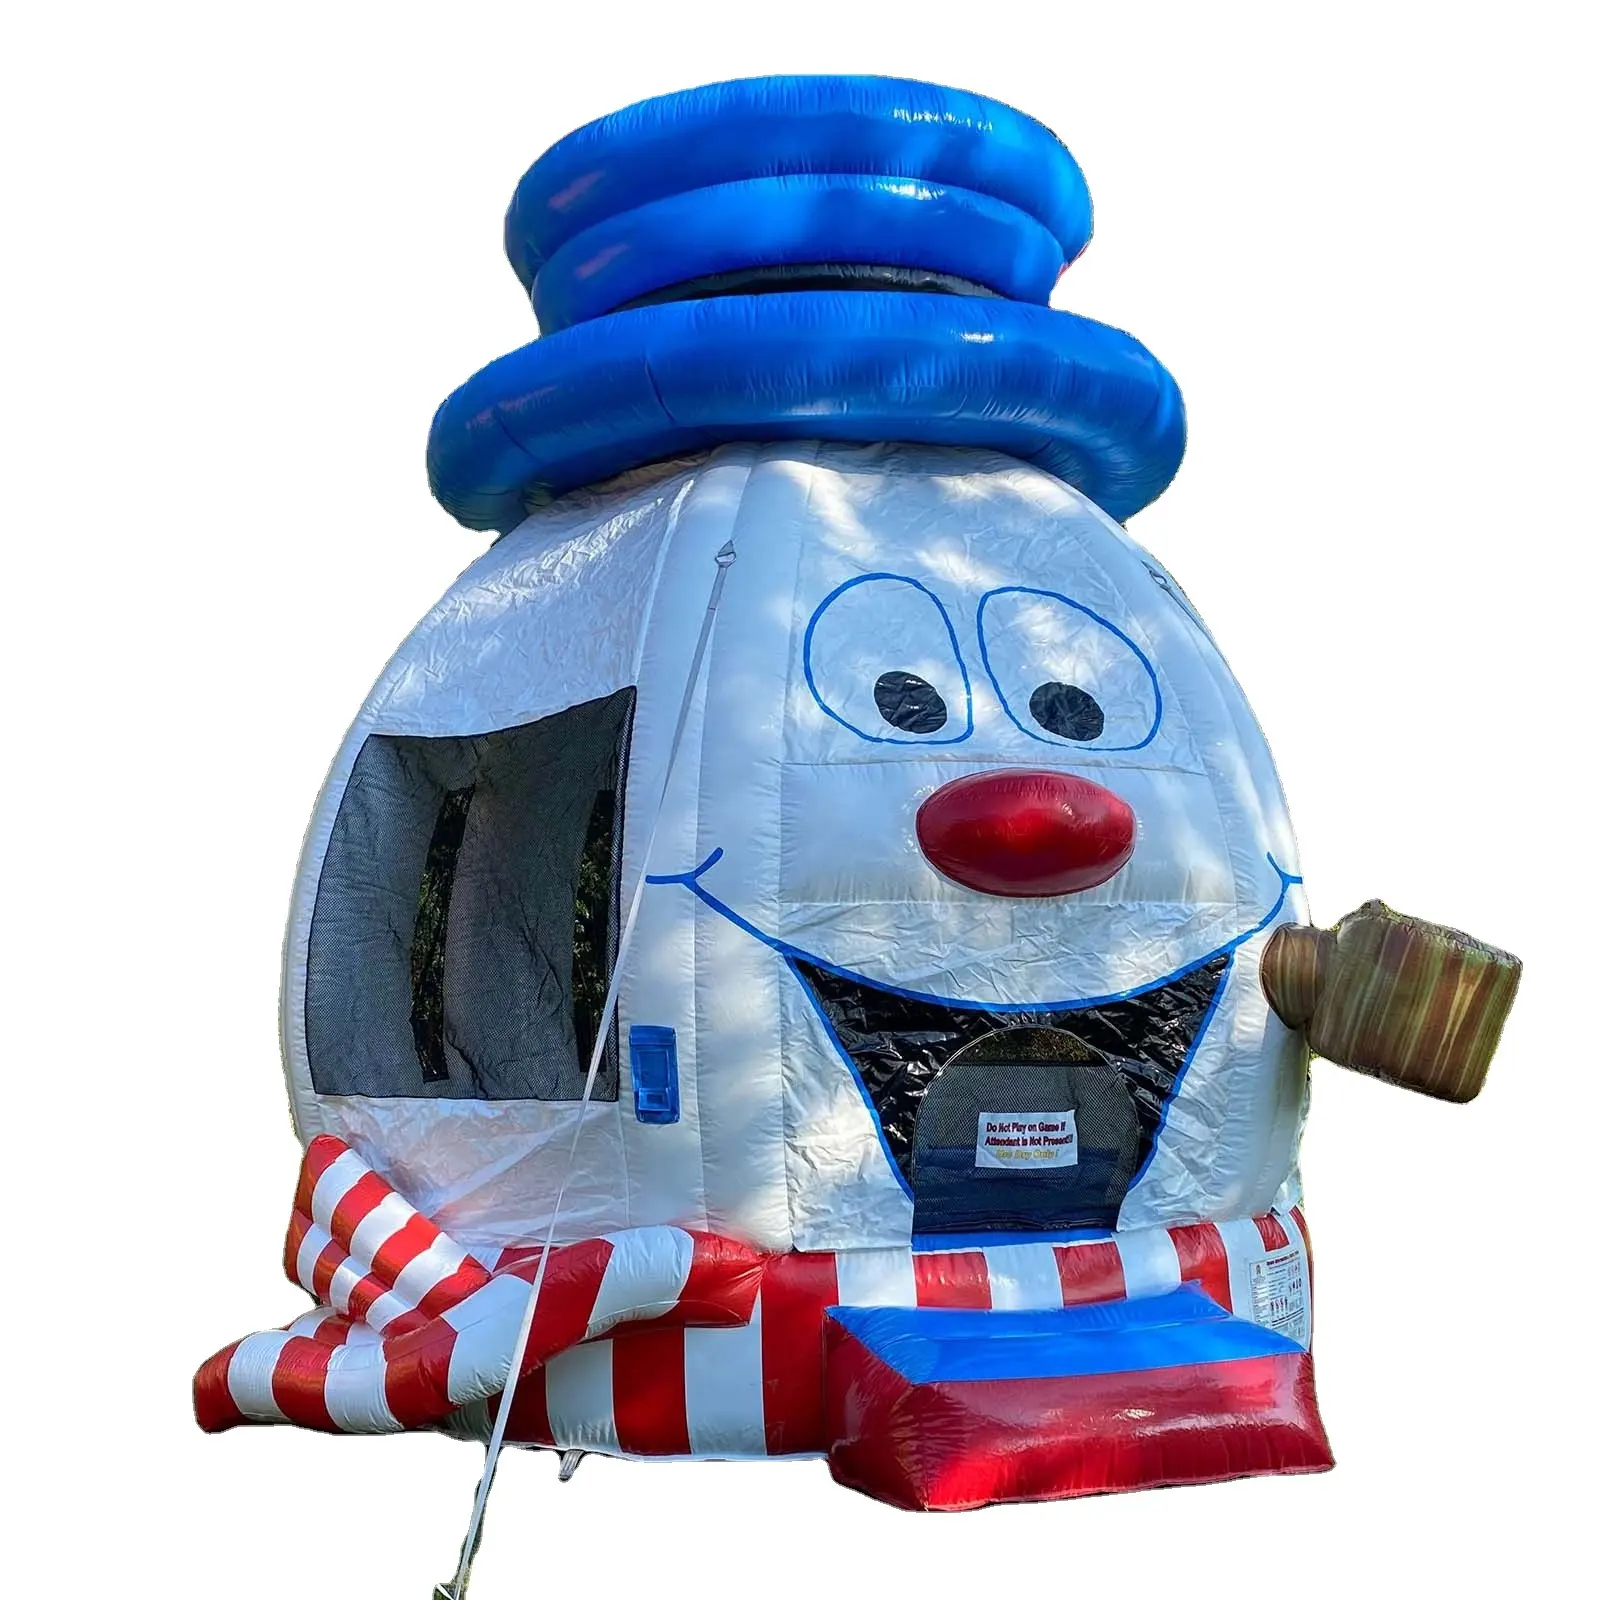 Casa de salto inflável de boneco de neve em PVC para Natal, barraca de trampolim para diversão ao ar livre ou aluguel